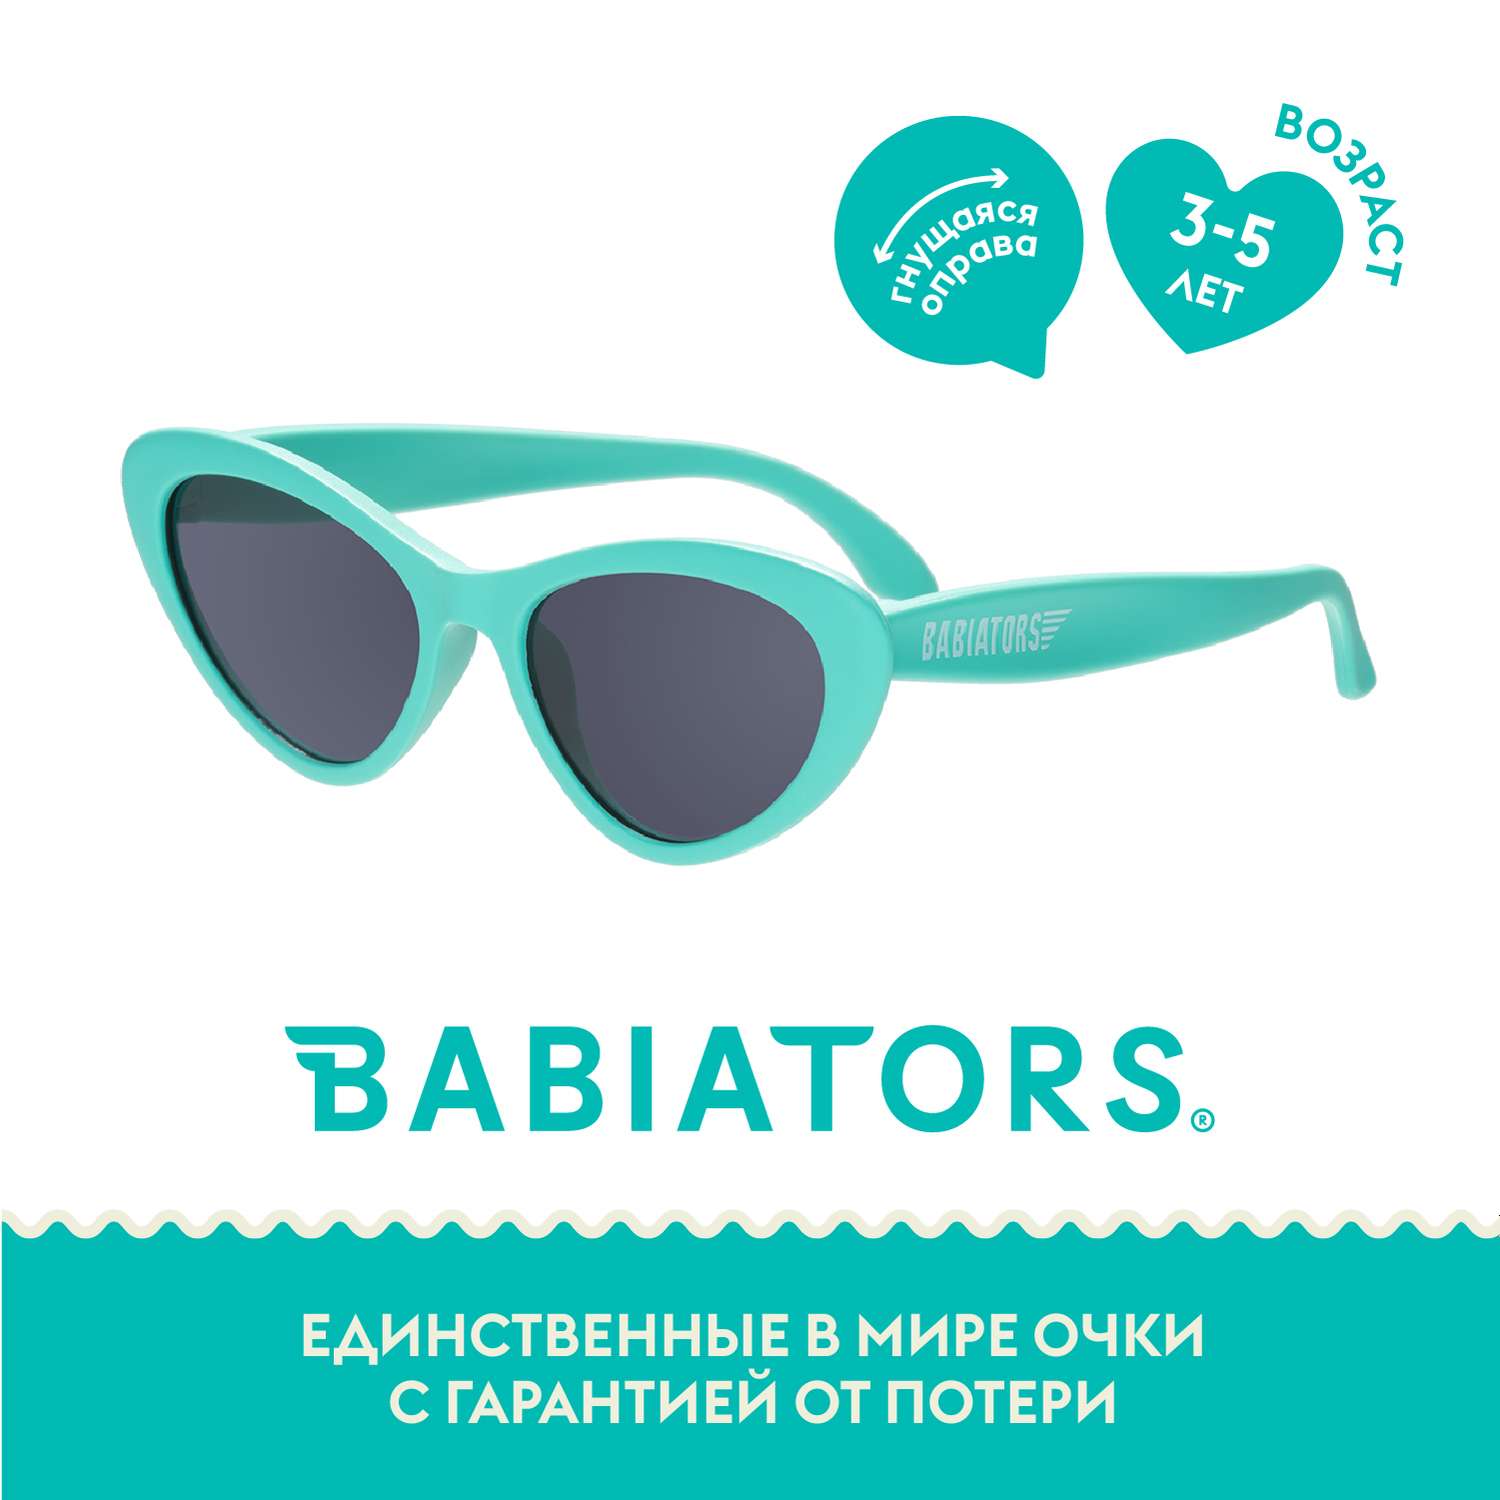 Солнцезащитные очки Babiators Original Cat-Eye Весь бирюзовый 3-5 CAT-011 - фото 2